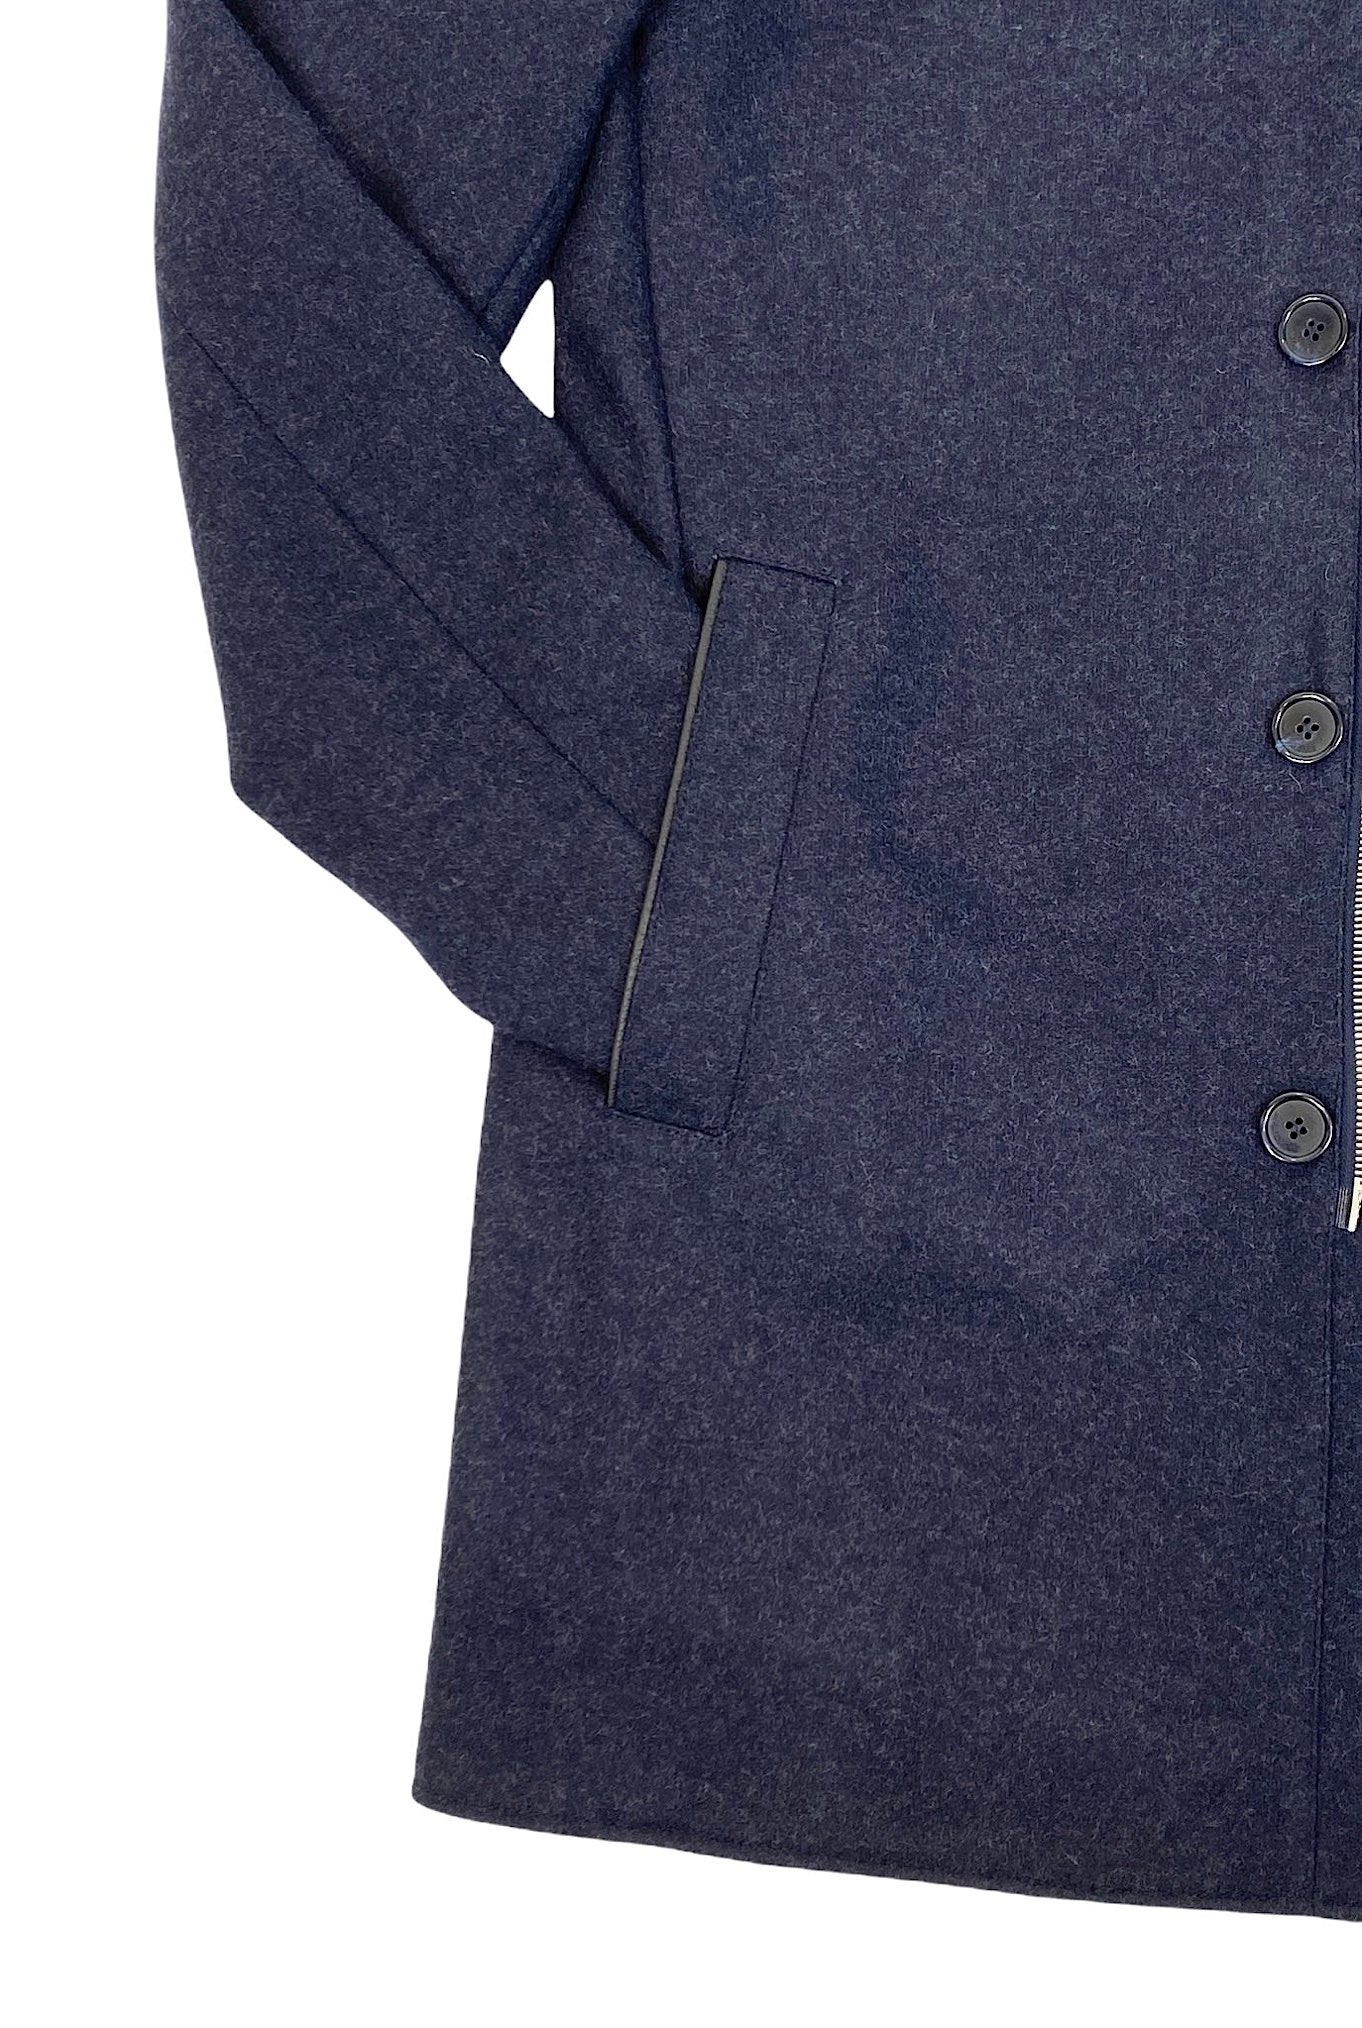 MANDELLI Cappotto in Cashmere con Cappuccio Staccabile Blu